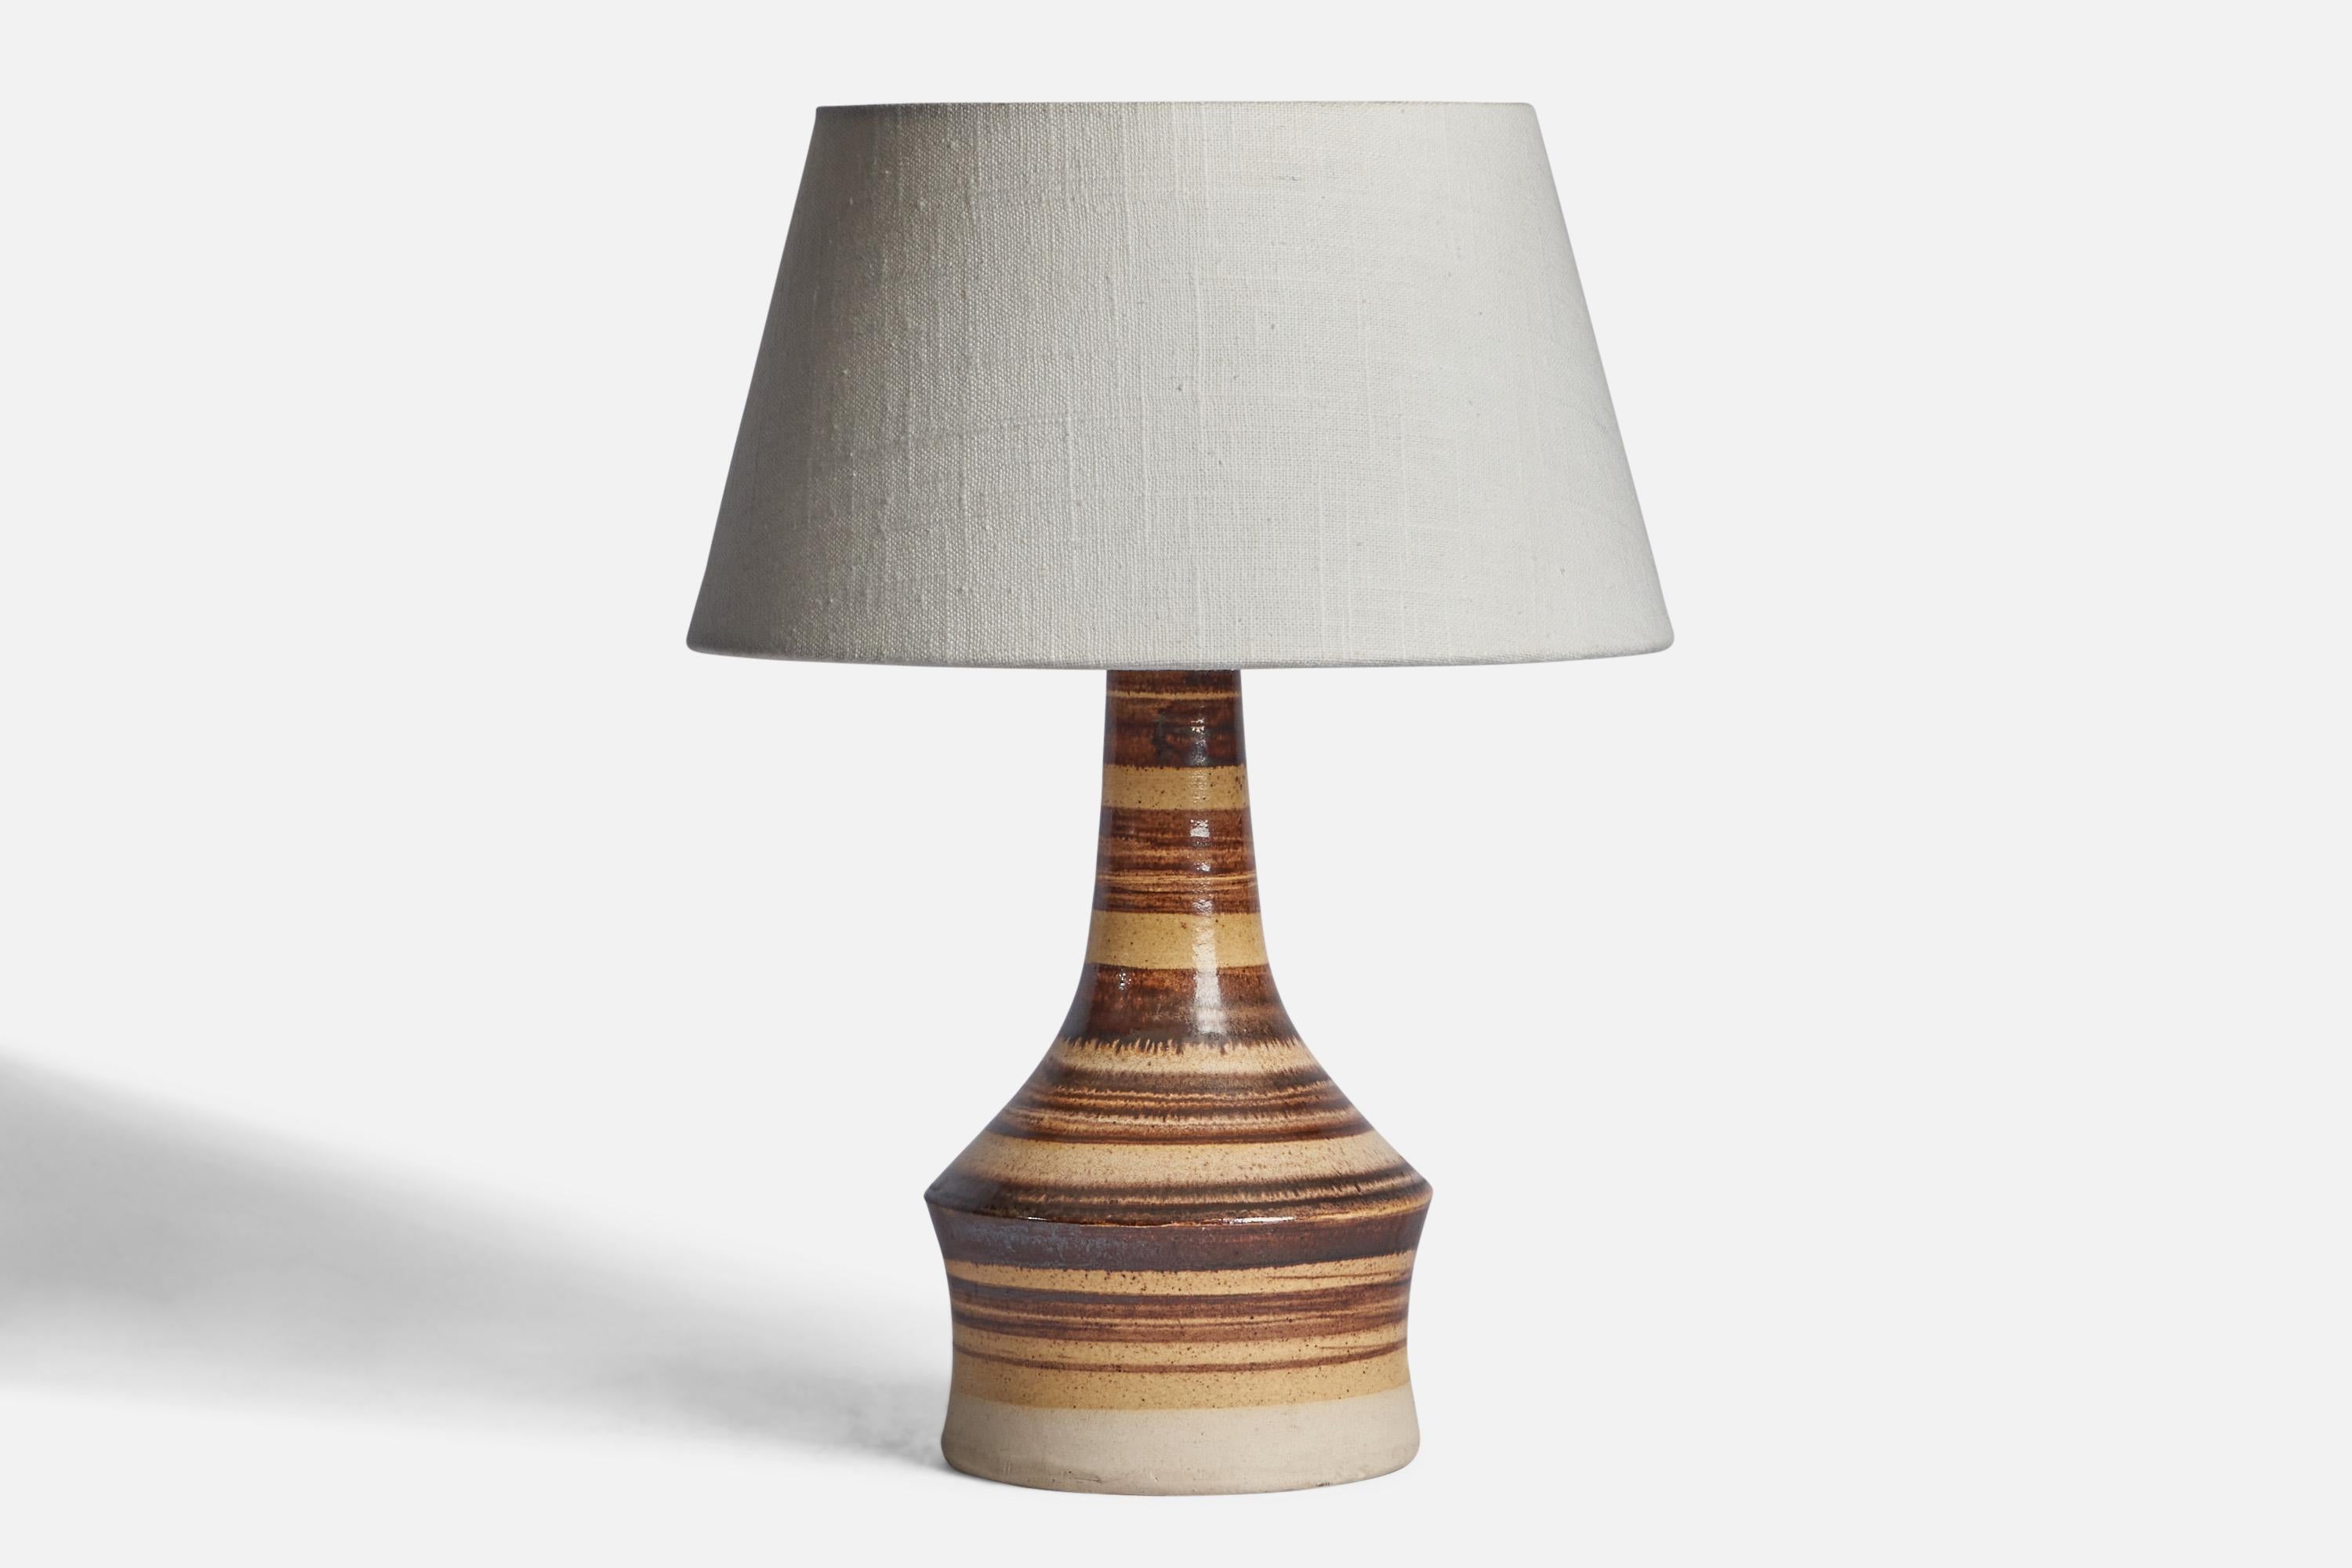 Eine Tischlampe aus braunem und beigefarbenem Steingut, entworfen und hergestellt in Dänemark, 1960er Jahre.

Abmessungen der Lampe (Zoll): 10,75